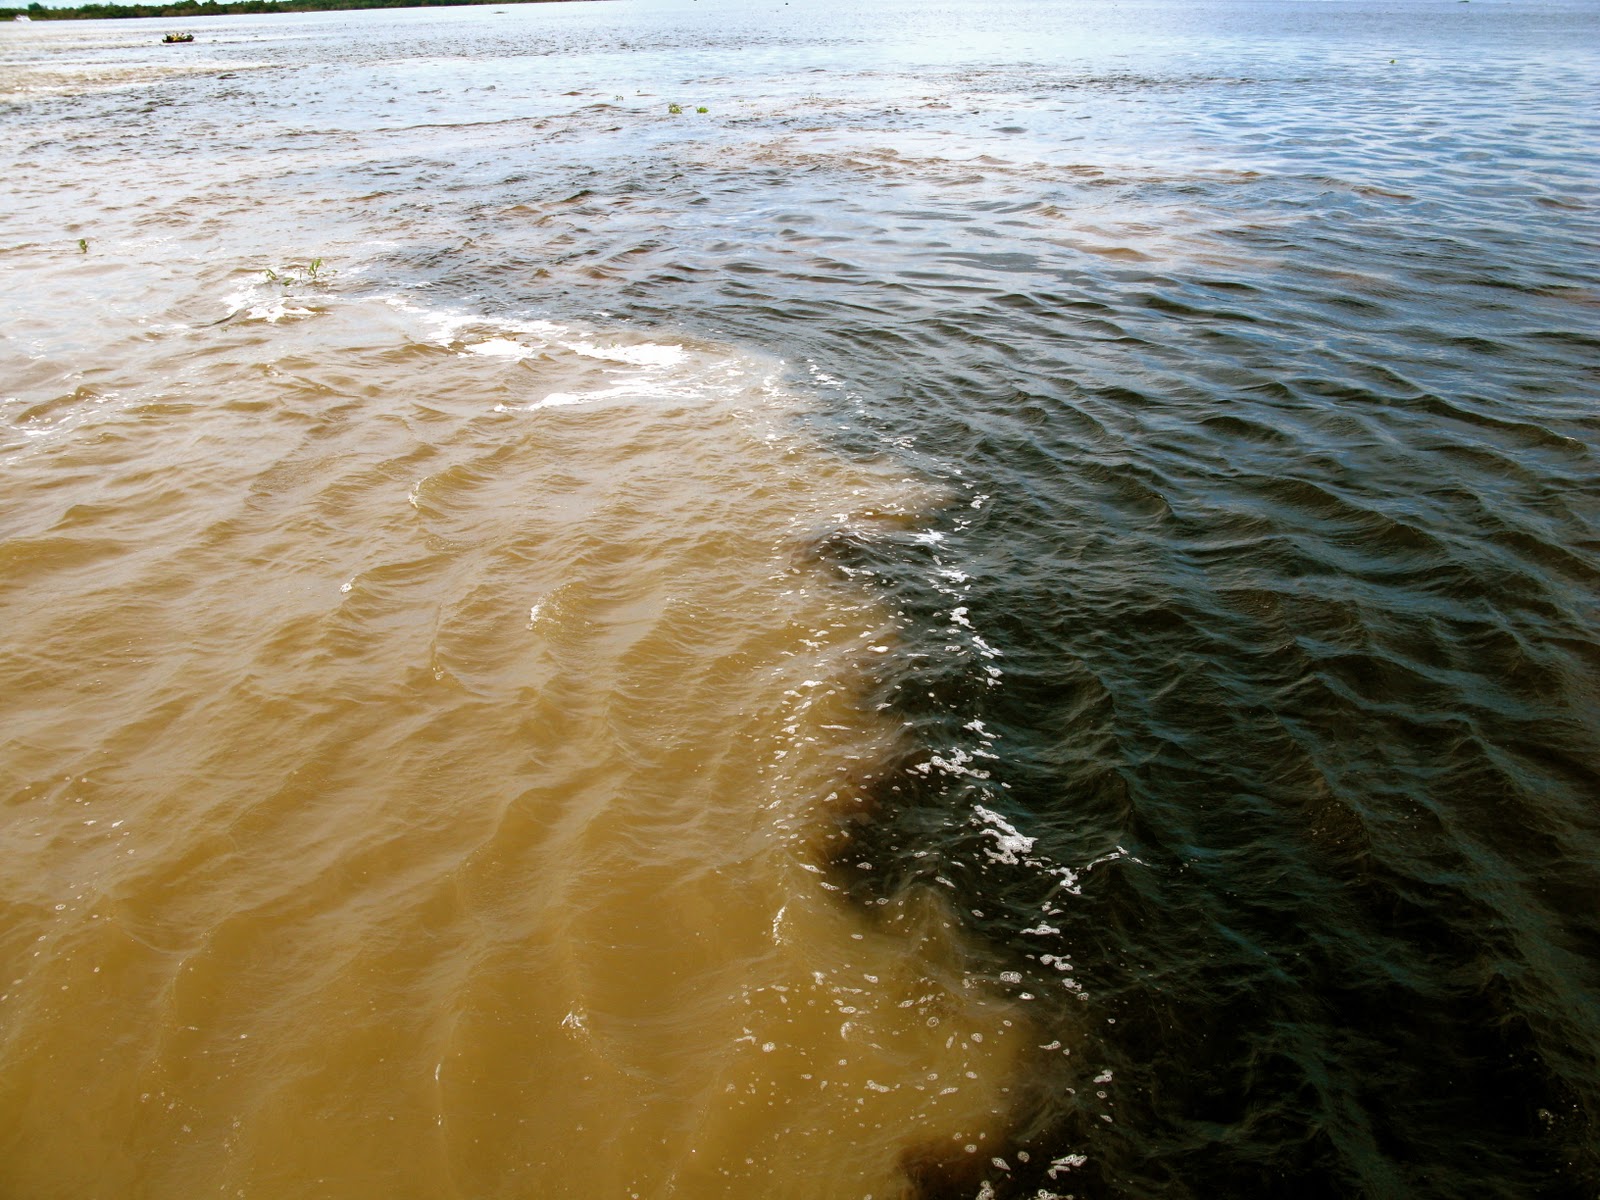 А жизнь мутная вода волна туда. Реки Солимоэс и Риу-негру. Слияние амазонки и Рио-Негро. Чистое и грязное море. Грязная вода.